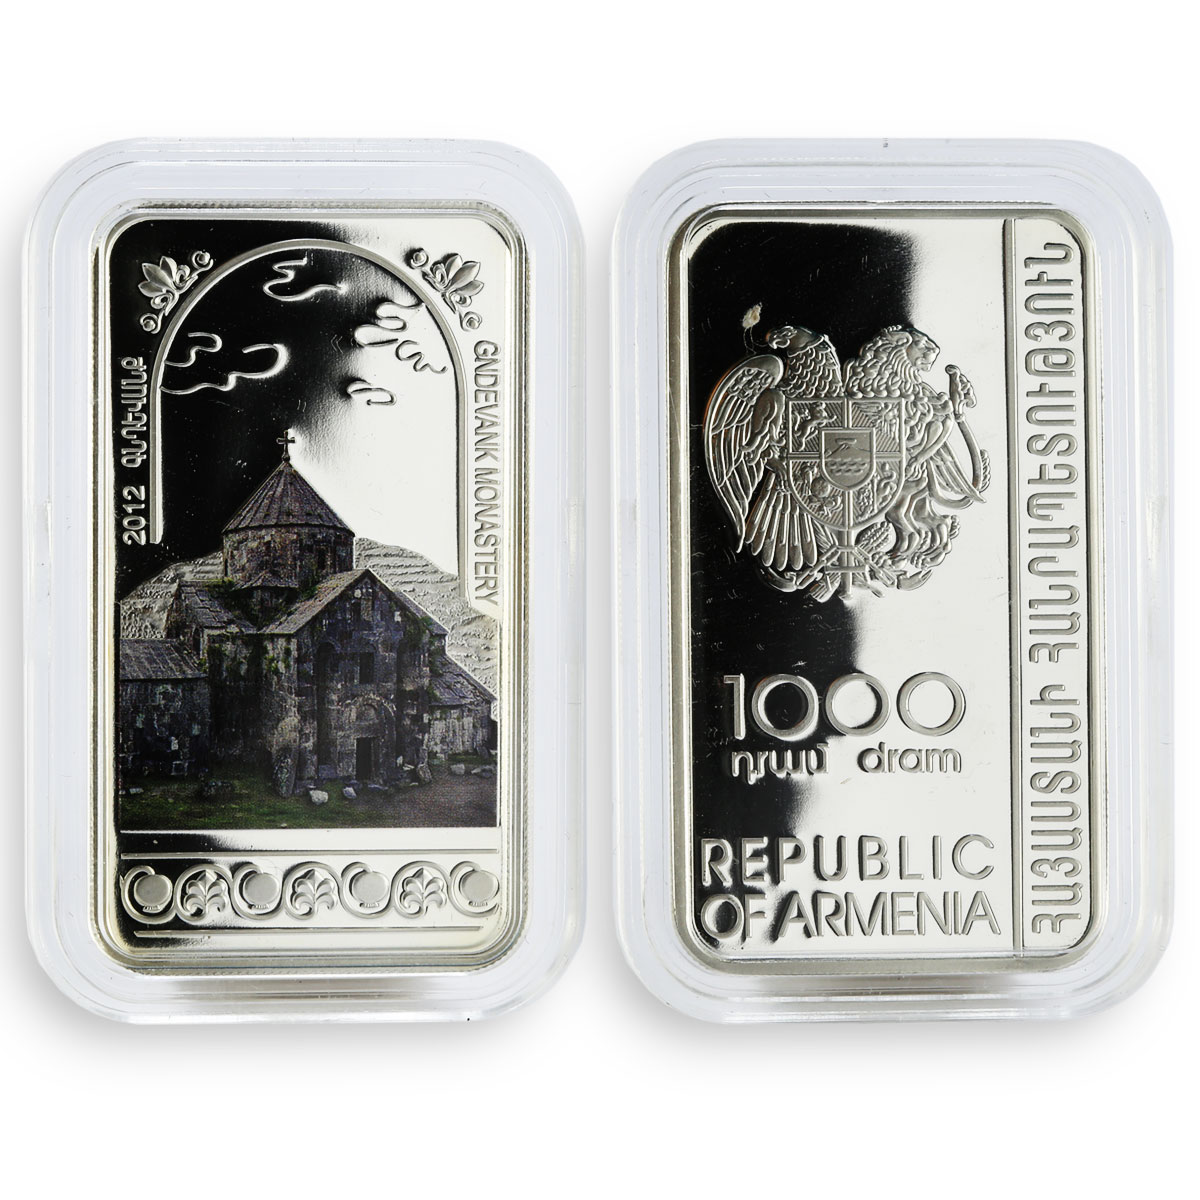 Armenia set of 6 coins 1000 dram Armenian Monasteries and Churches silver 2012